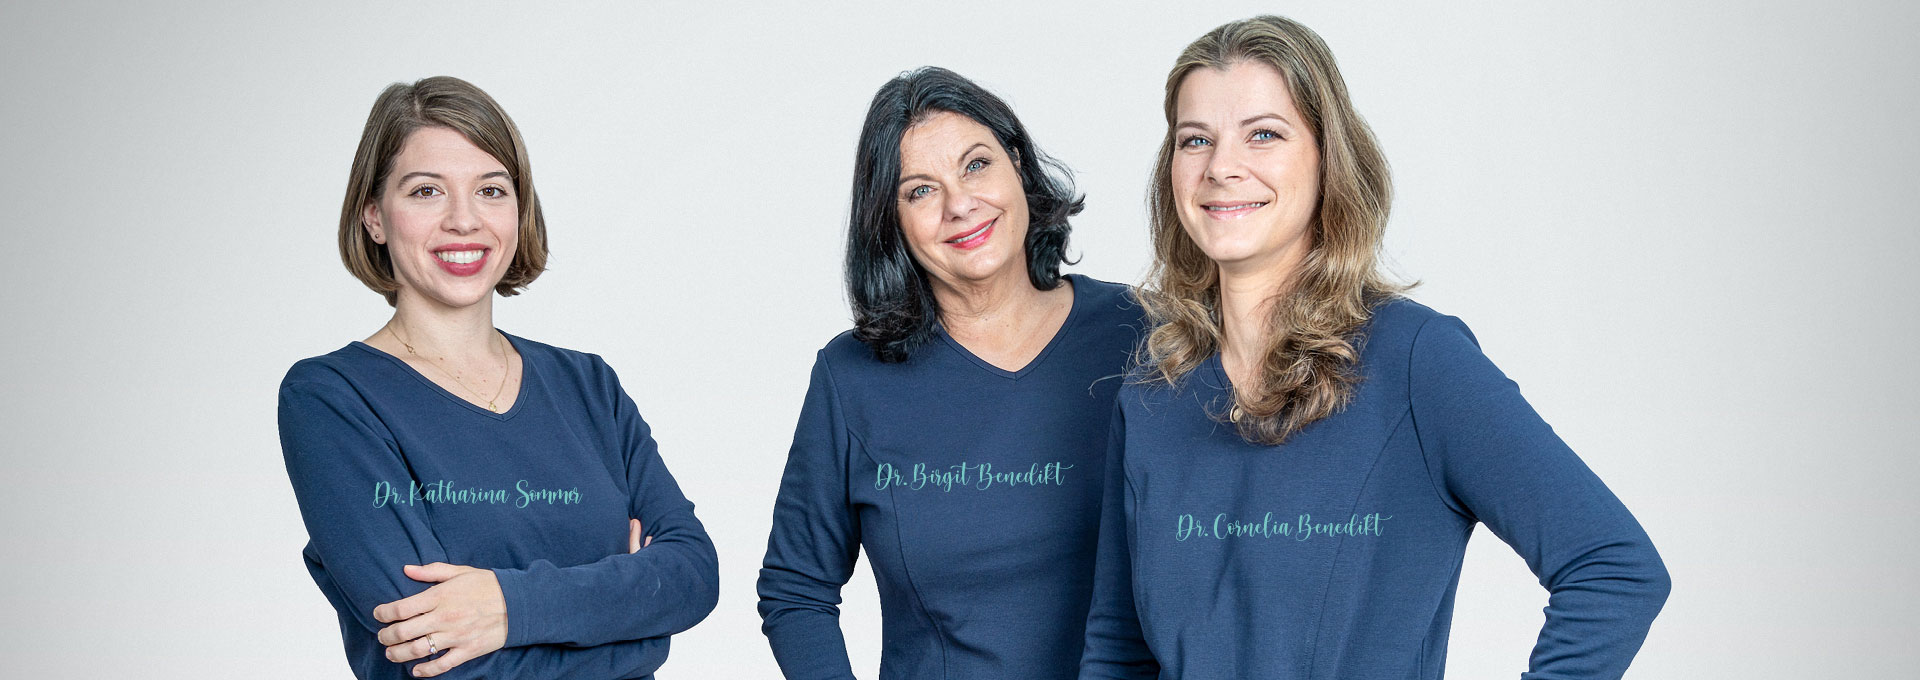 Gruppenfoto Dr. Katharina Sommer, Dr. Birgit Benedikt und Dr. Cornelia Benedikt